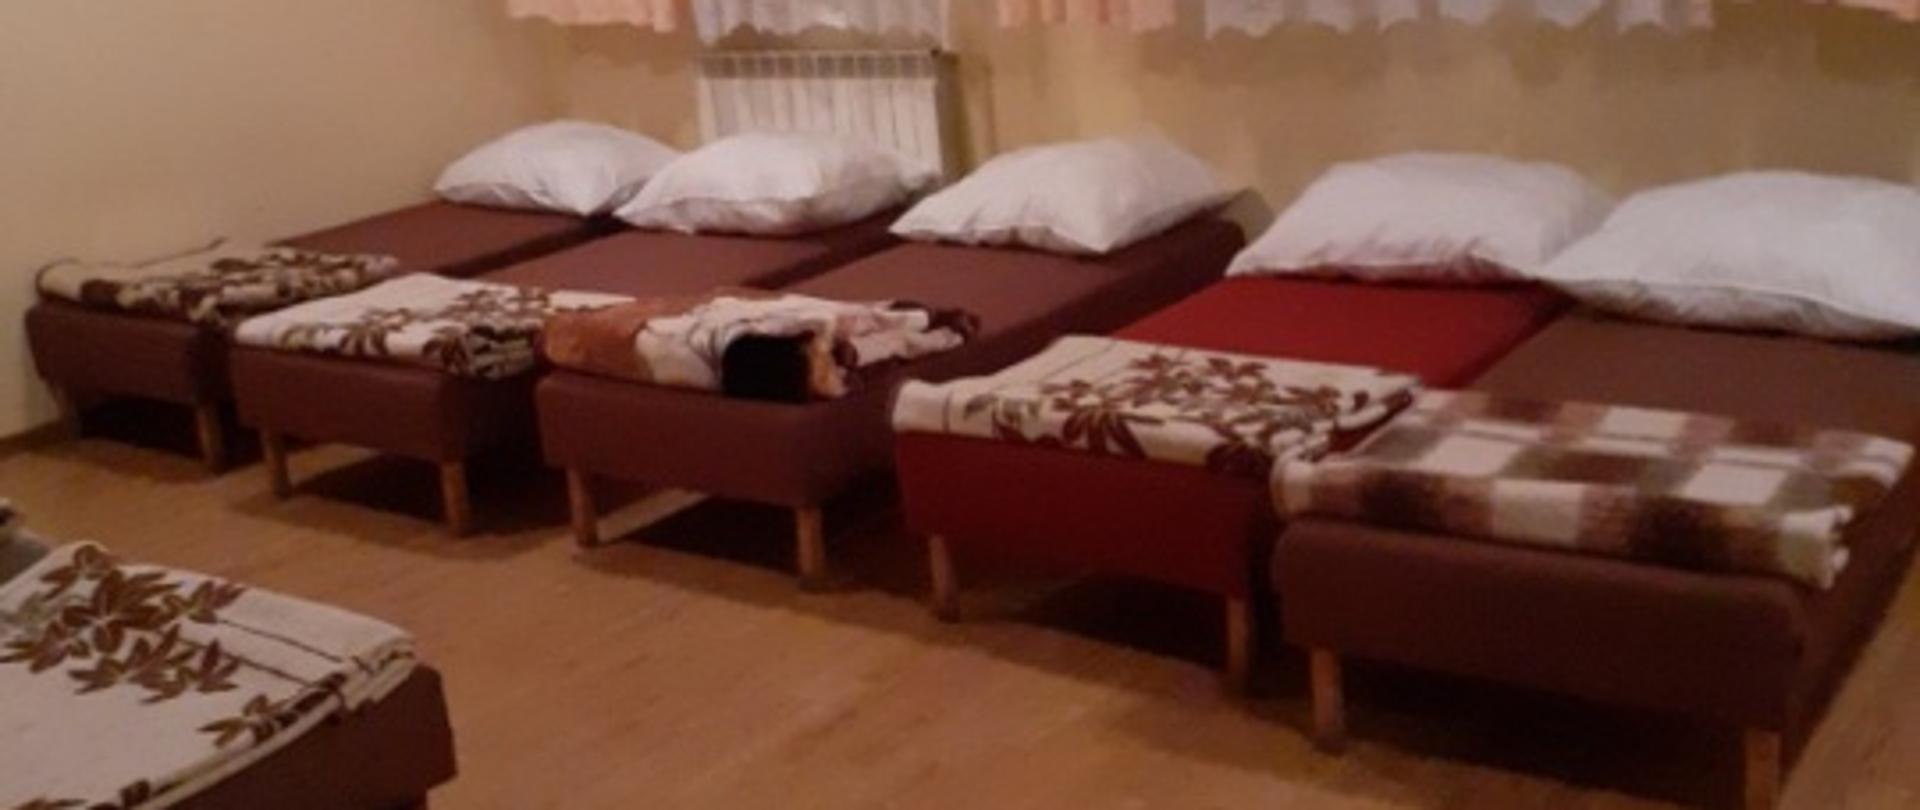 Zdjęcie przedstawia łóżka przygotowane dla uchodźców z Ukrainy